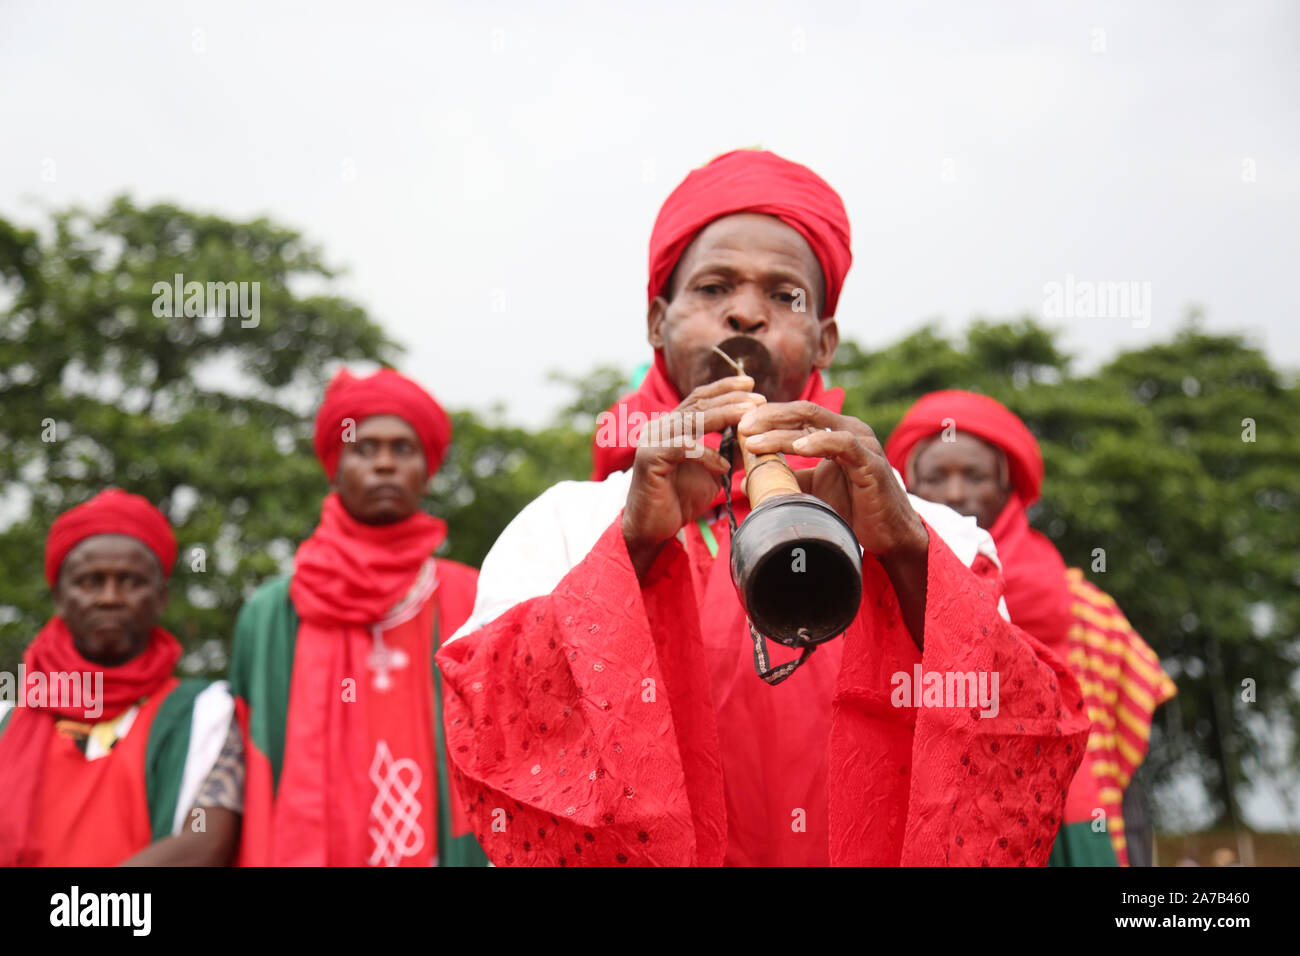 Un homme du nord du Nigeria soufflait d'une flûte traditionnelle lors du Festival national des arts et de la culture (NAFEST) dans l'État d'Edo, au Nigeria. Banque D'Images